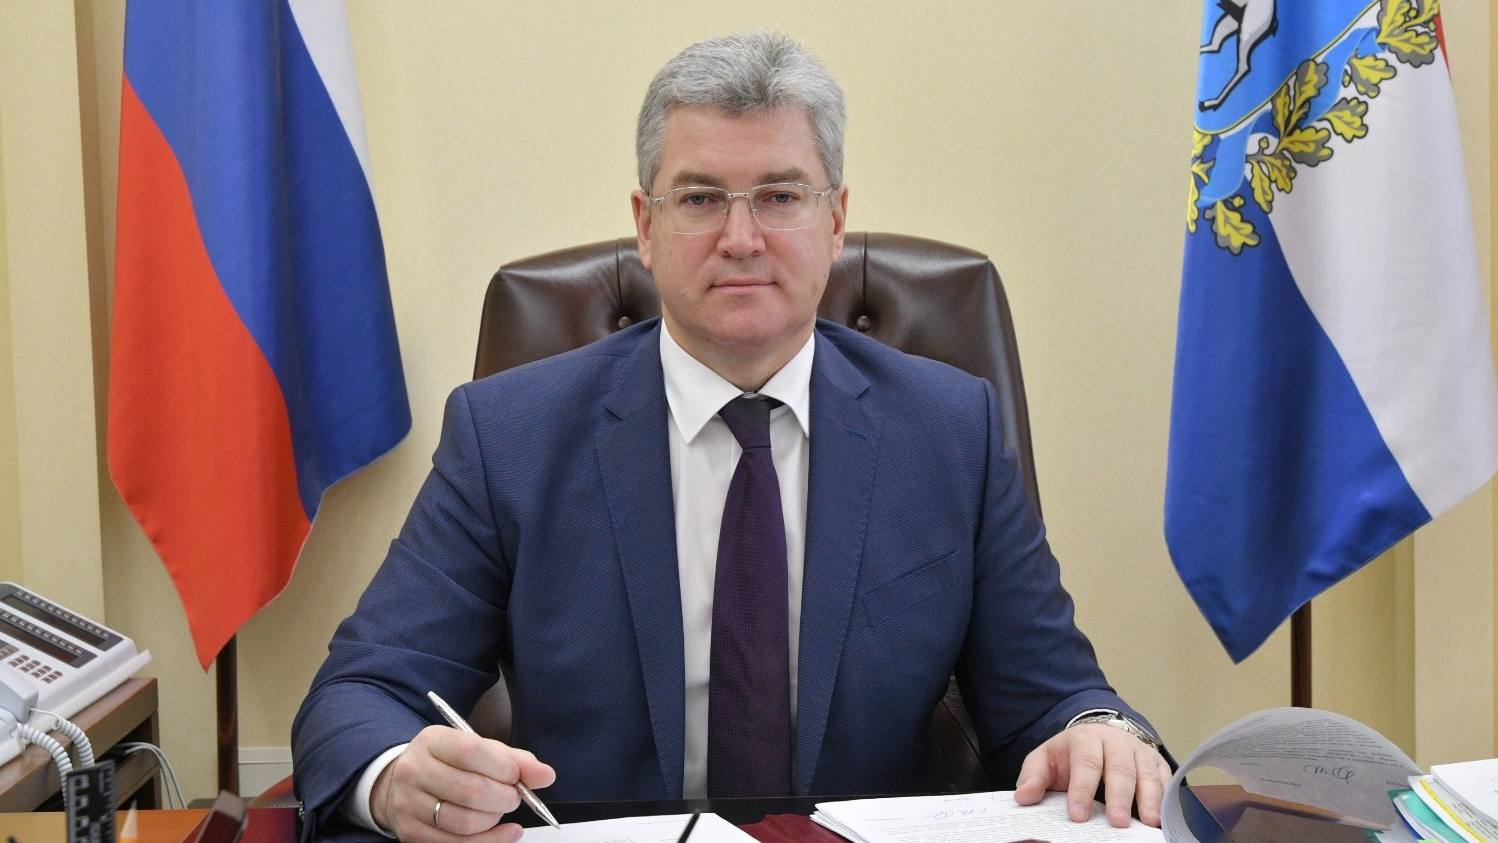 Первый вице-губернатор Самарской области Виктор Кудряшов порекомендовал предпринимателям быстрее определяться с оптимальным для них налоговом режимом